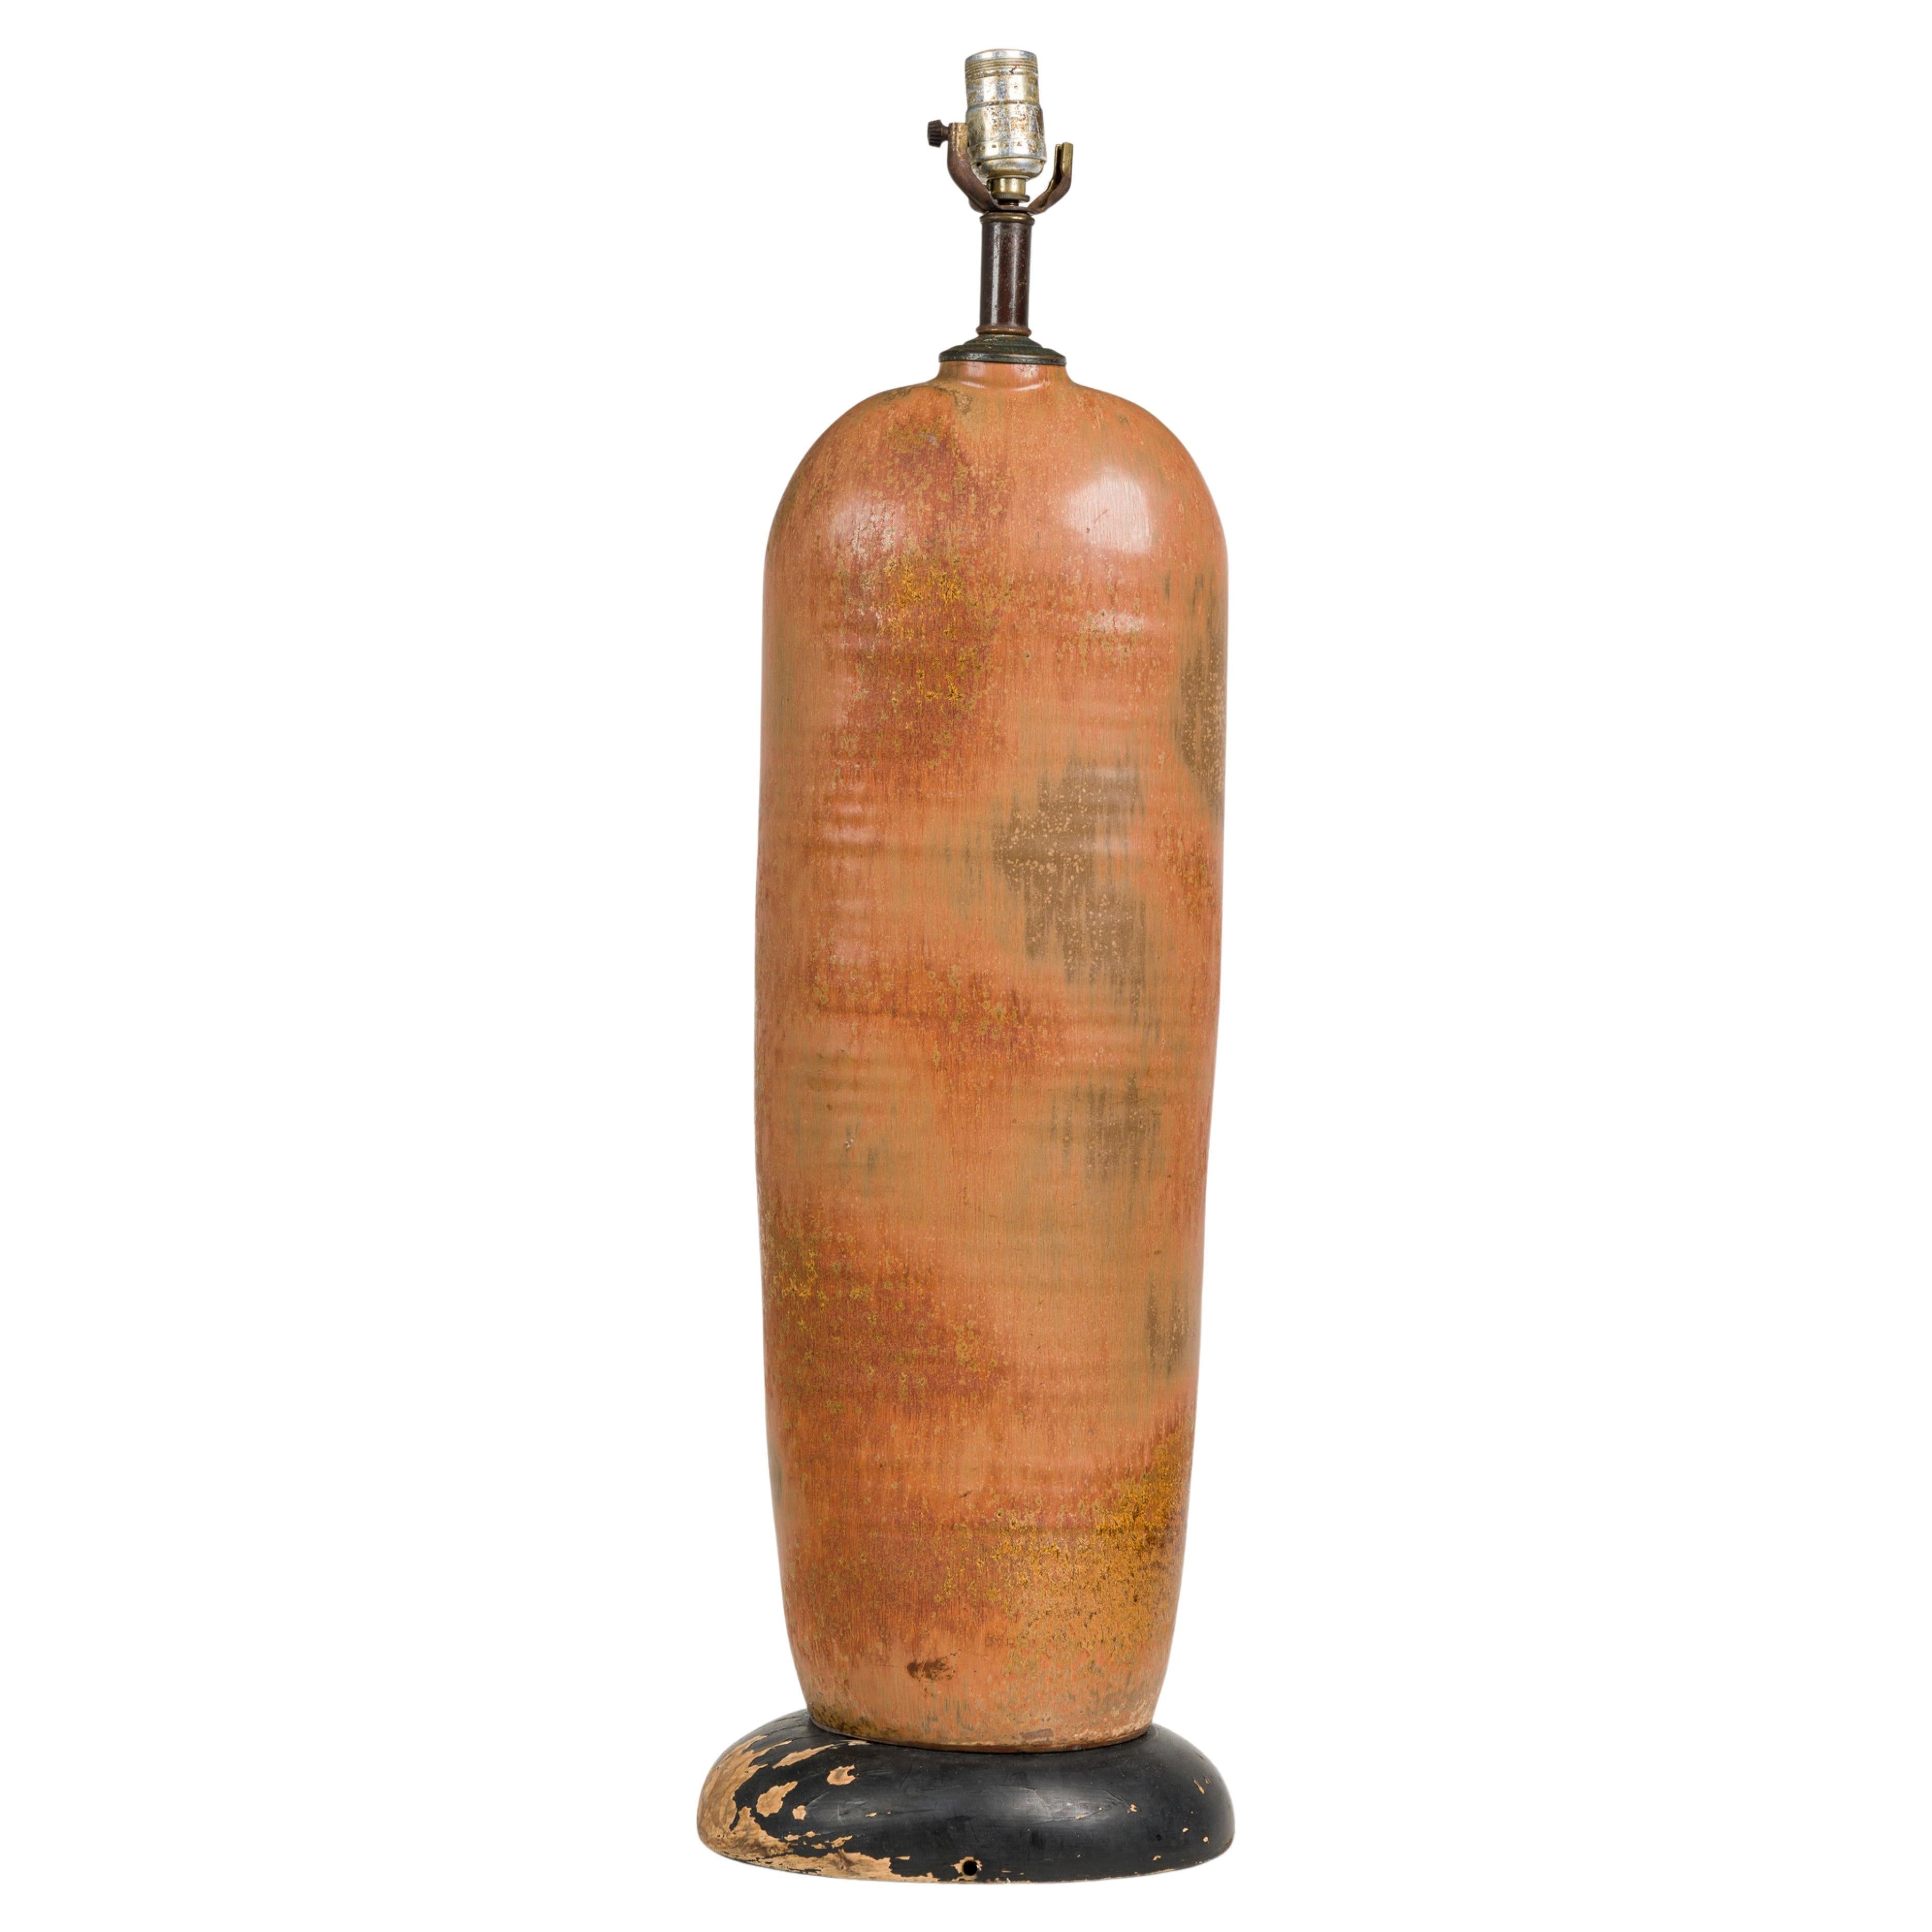 Lampe de table de forme bouteille en céramique américaine du milieu du siècle, émaillée dans le ton de la terre